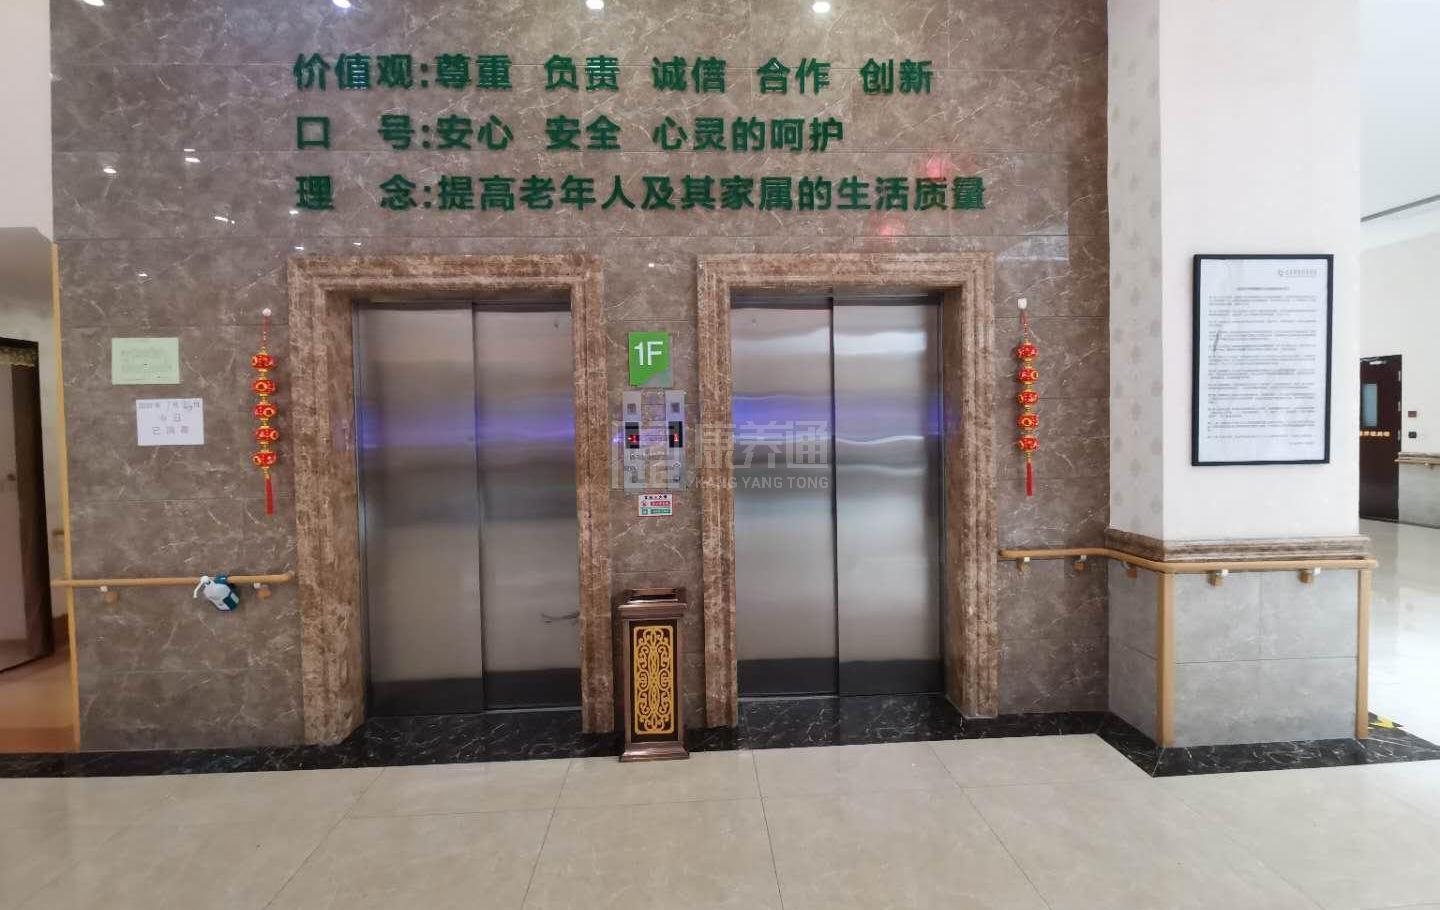 北京汇晨古塔老年公寓有限公司环境图-床位